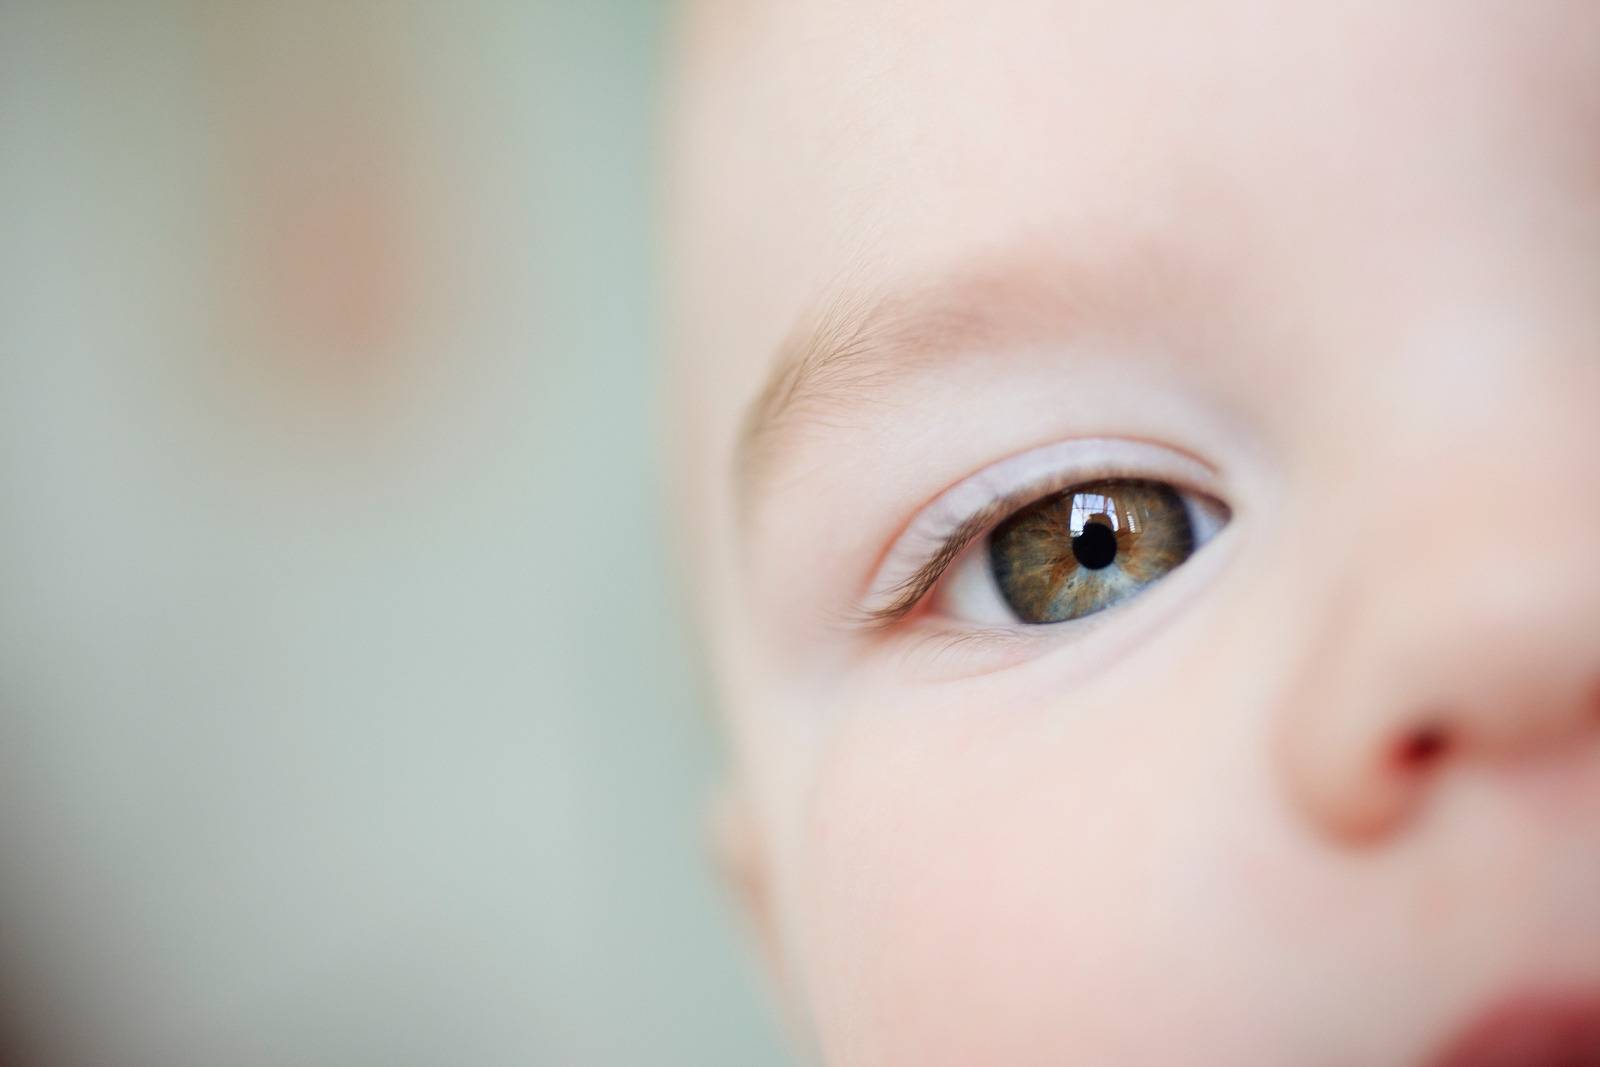 Цвет глаз у новорожденных: когда меняется у детей, каким будет окончательный цвет радужки